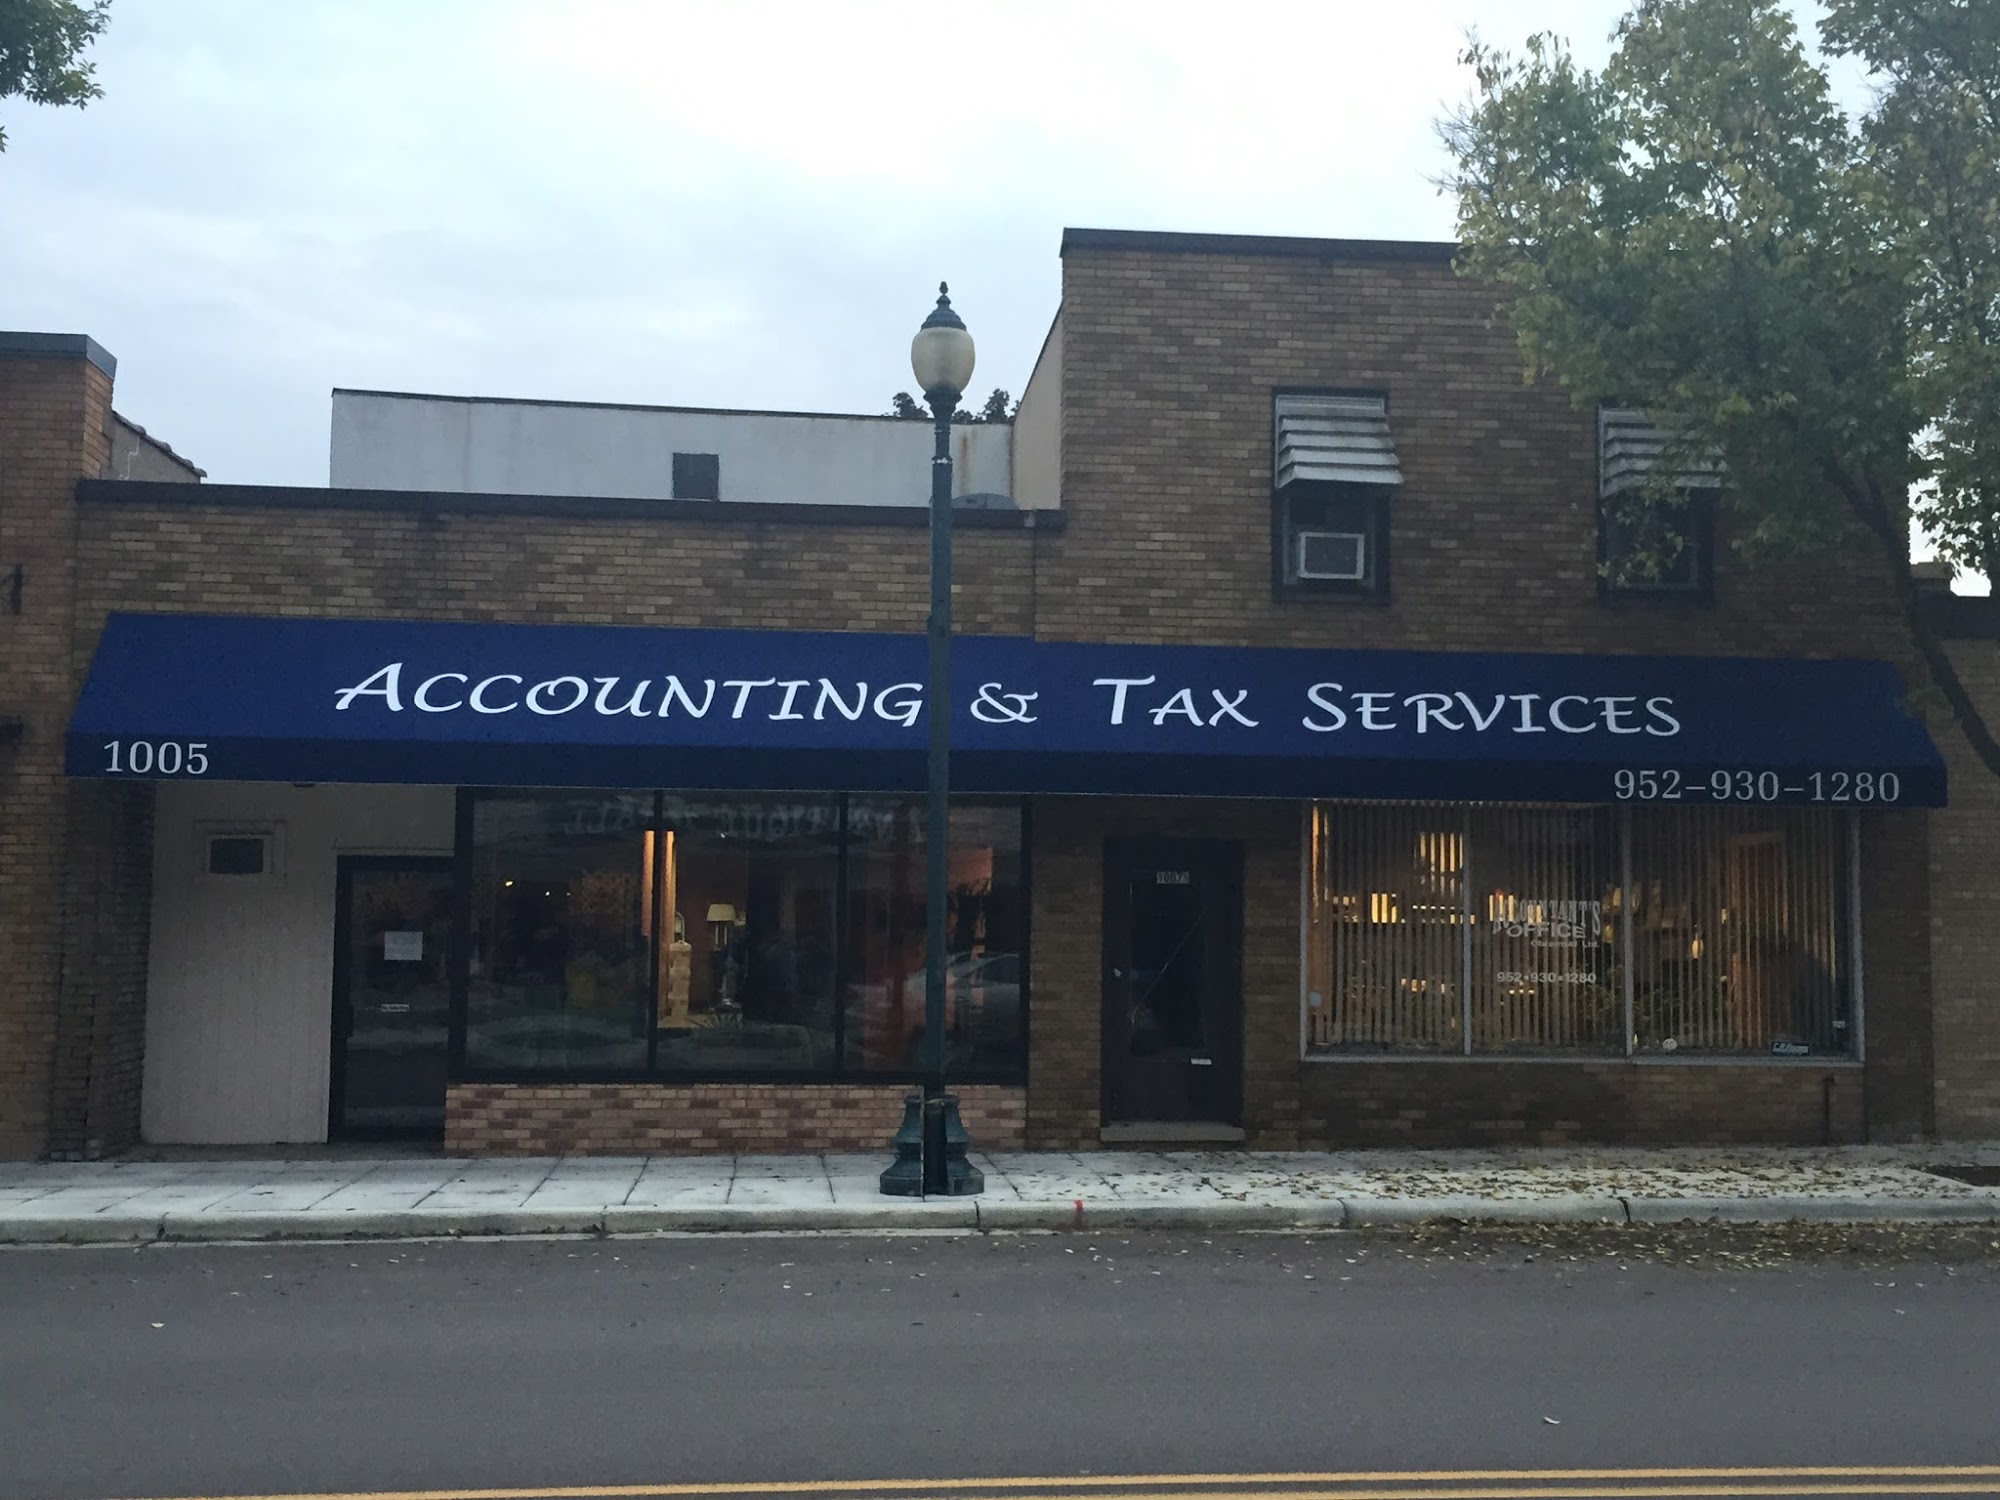 Obremski Ltd Accounting & Tax Services